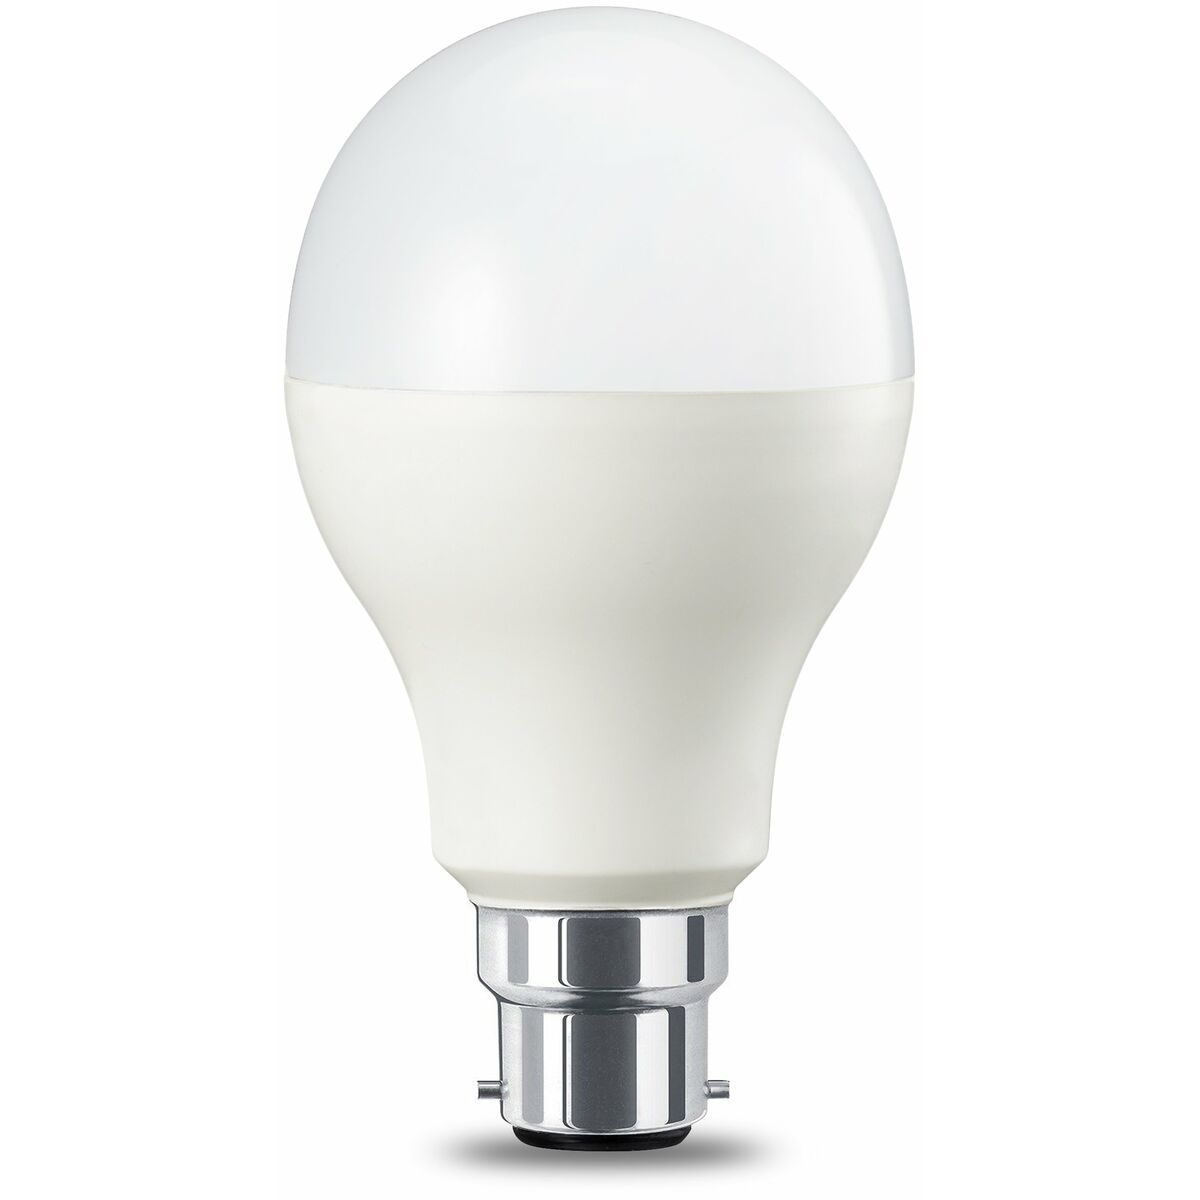 LED lamp Amazon Basics (Refurbished A+)